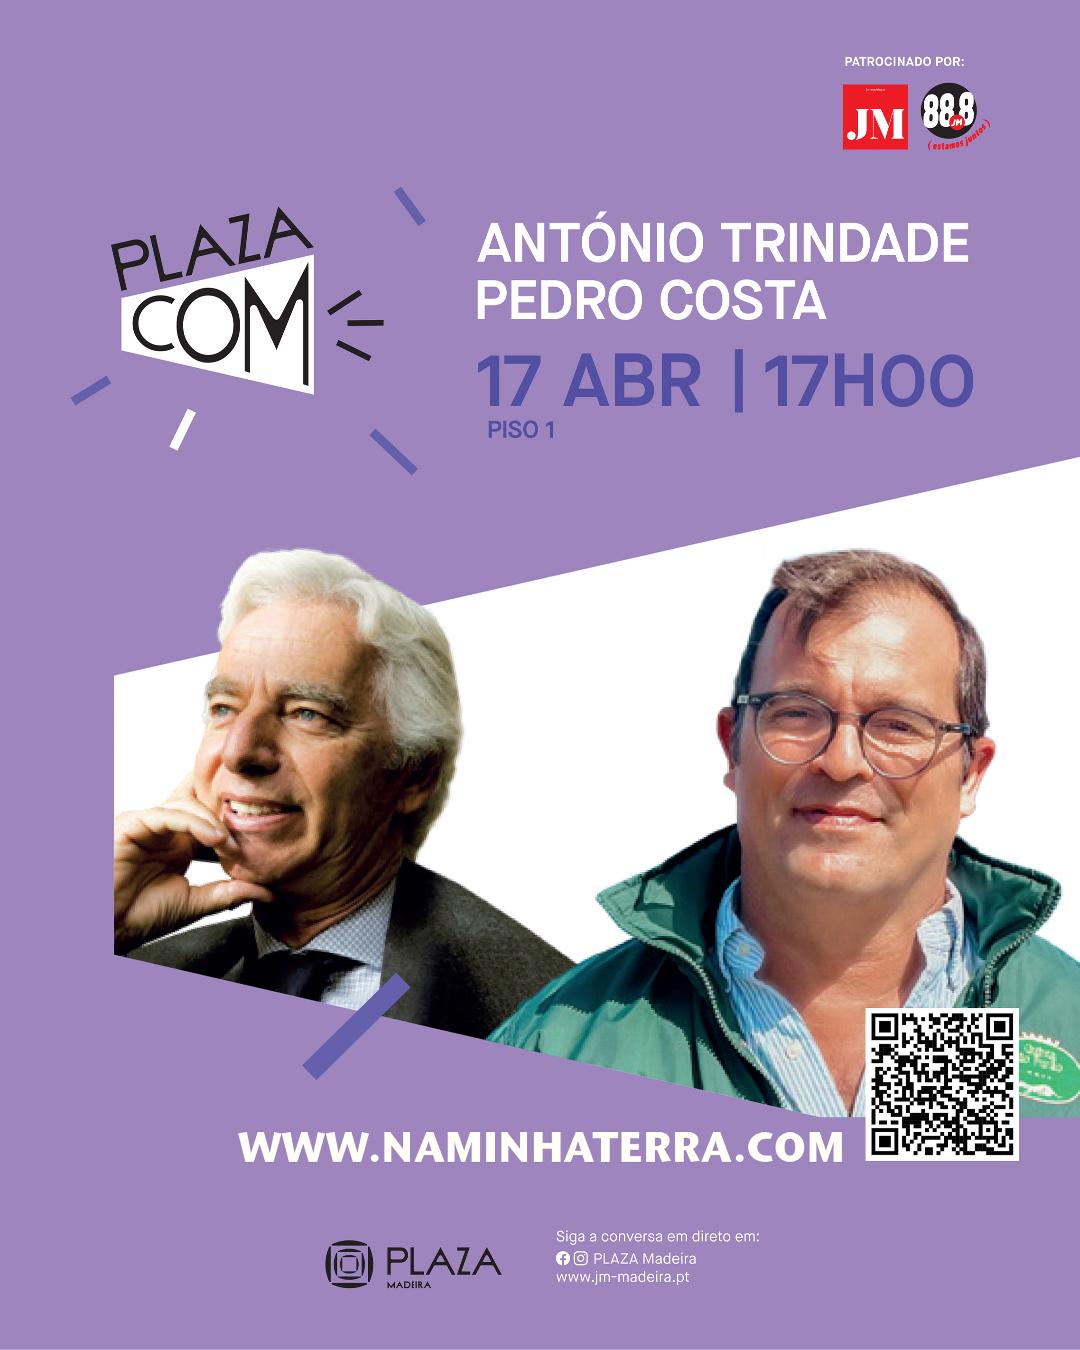 PLAZA COM | DR. ANTÓNIO TRINDADE E DR. PEDRO MILHEIRO DA COSTA